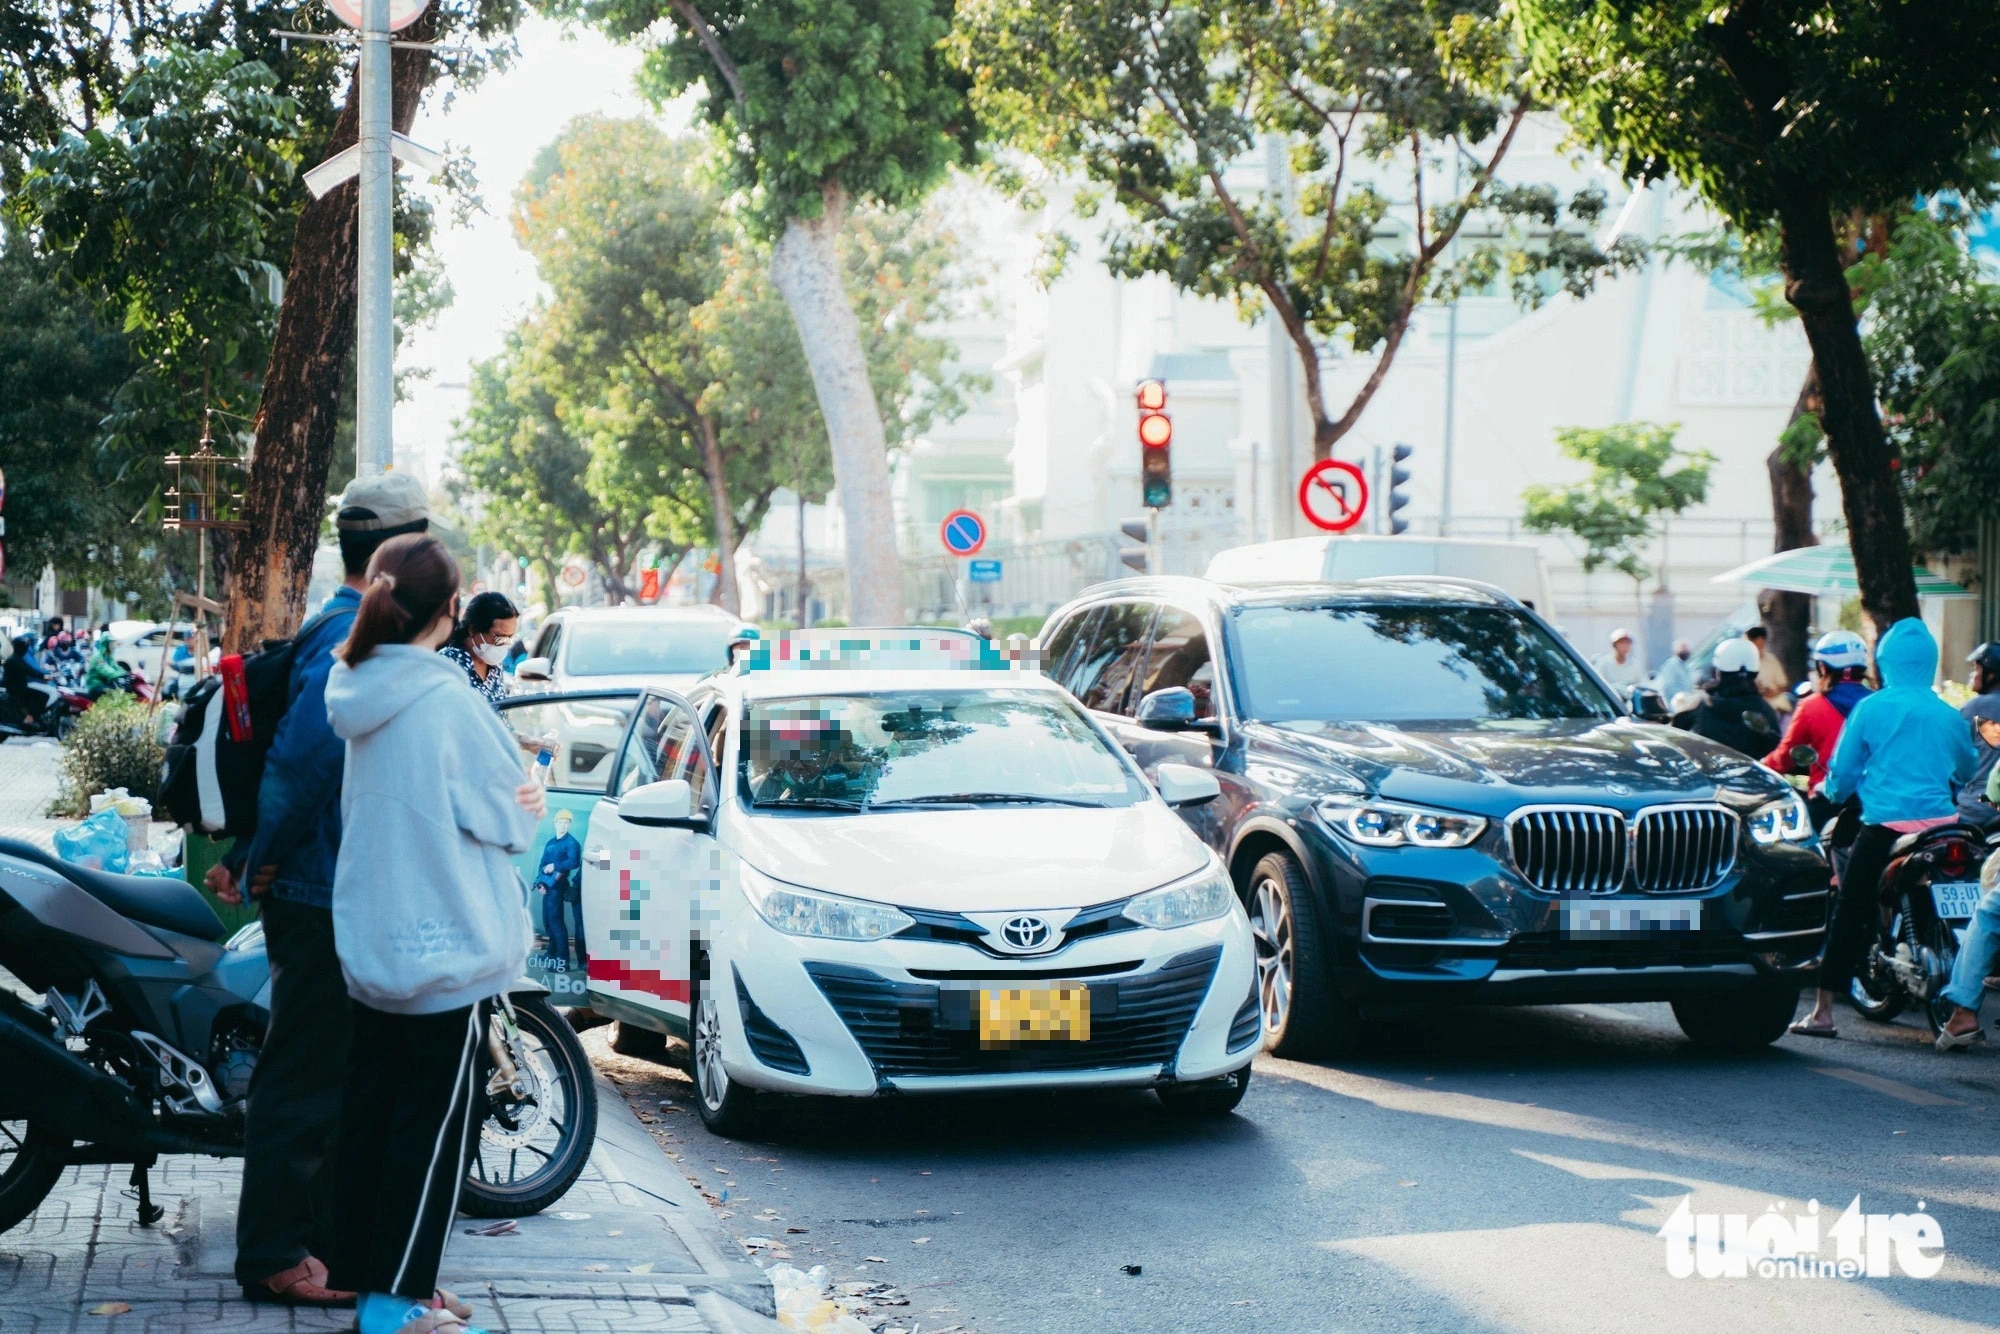 Đường Nguyễn Thông chỉ có 2 làn xe nên khi một chiếc taxi dừng đón khách thì các xe khác phải lách sang làn đối diện để vượt lên - Ảnh: THANH HIỆP